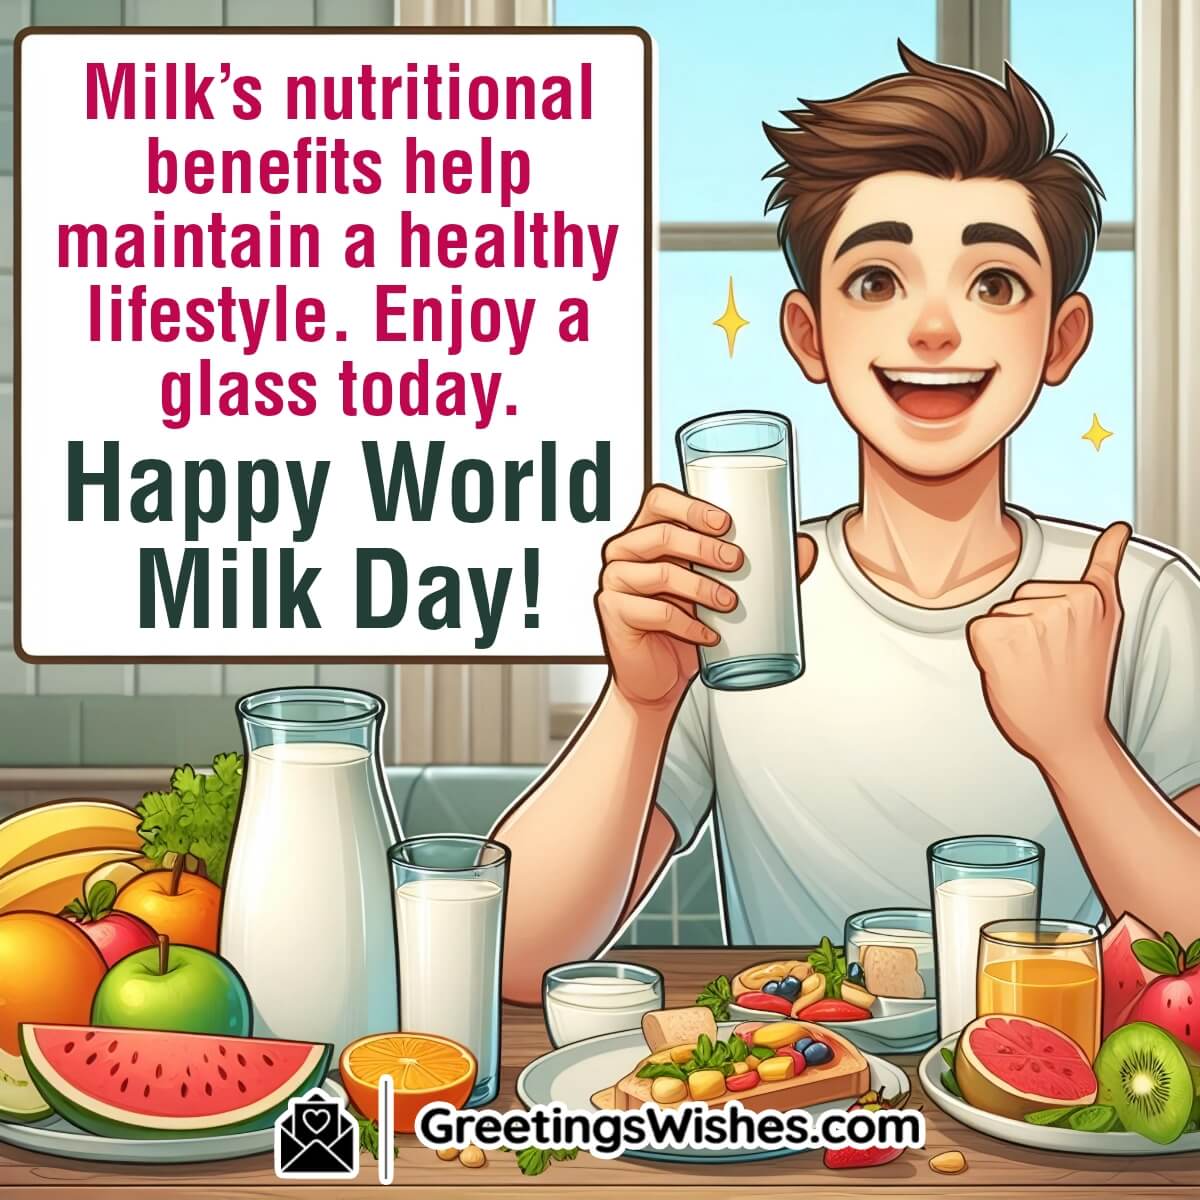 Happy World Milk Day Message